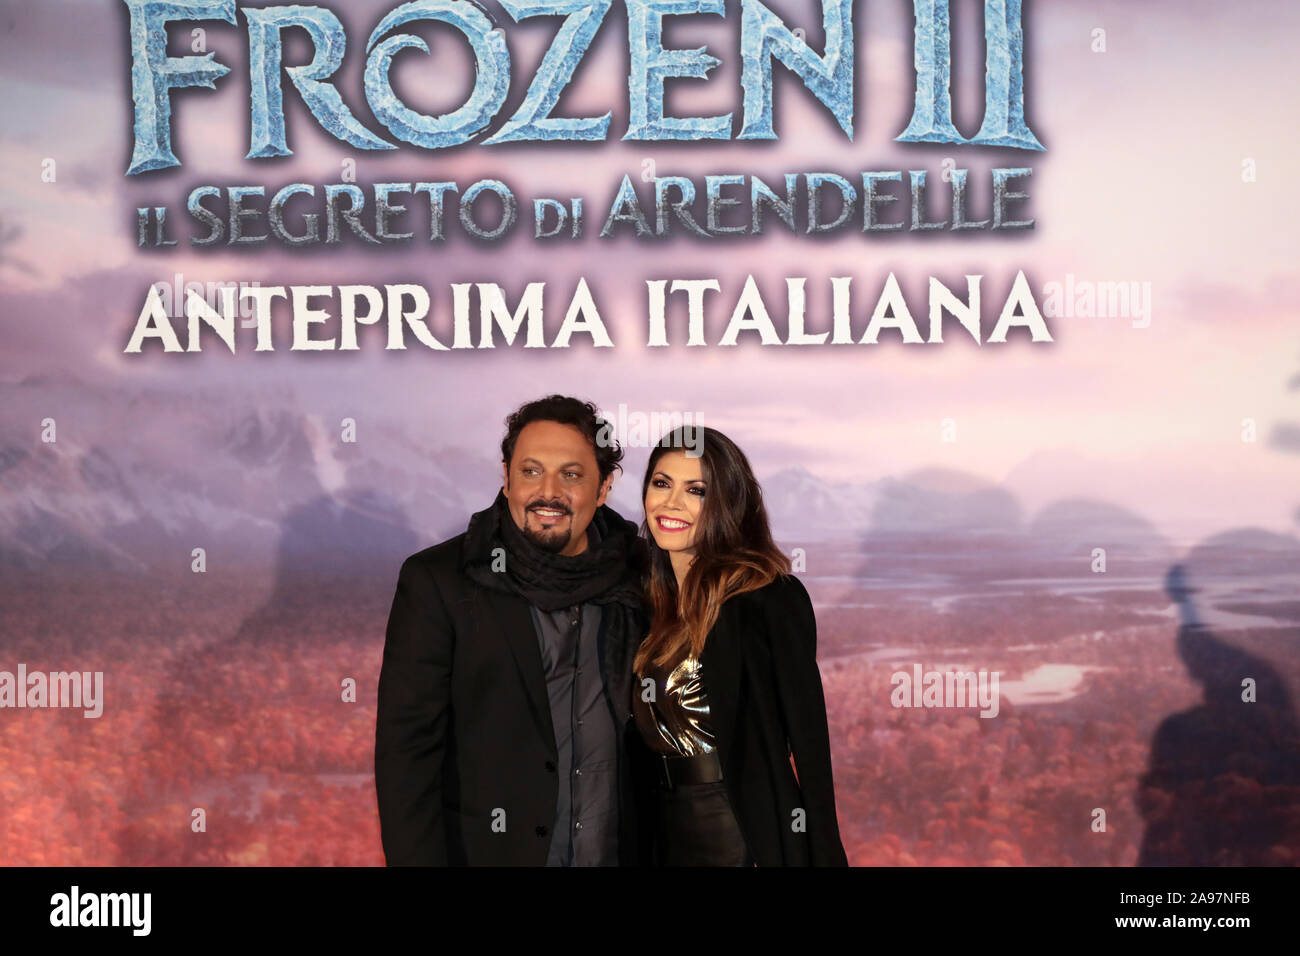 Roma, Italia - 12 Novembre 2019: Enrico Brignano (Olaf) con Flora Canto partecipare al red carpet presso l'anteprima del film "congelate 2 - Il segreto di Arendelle', presso lo Spazio Cinema Moderno. Foto Stock